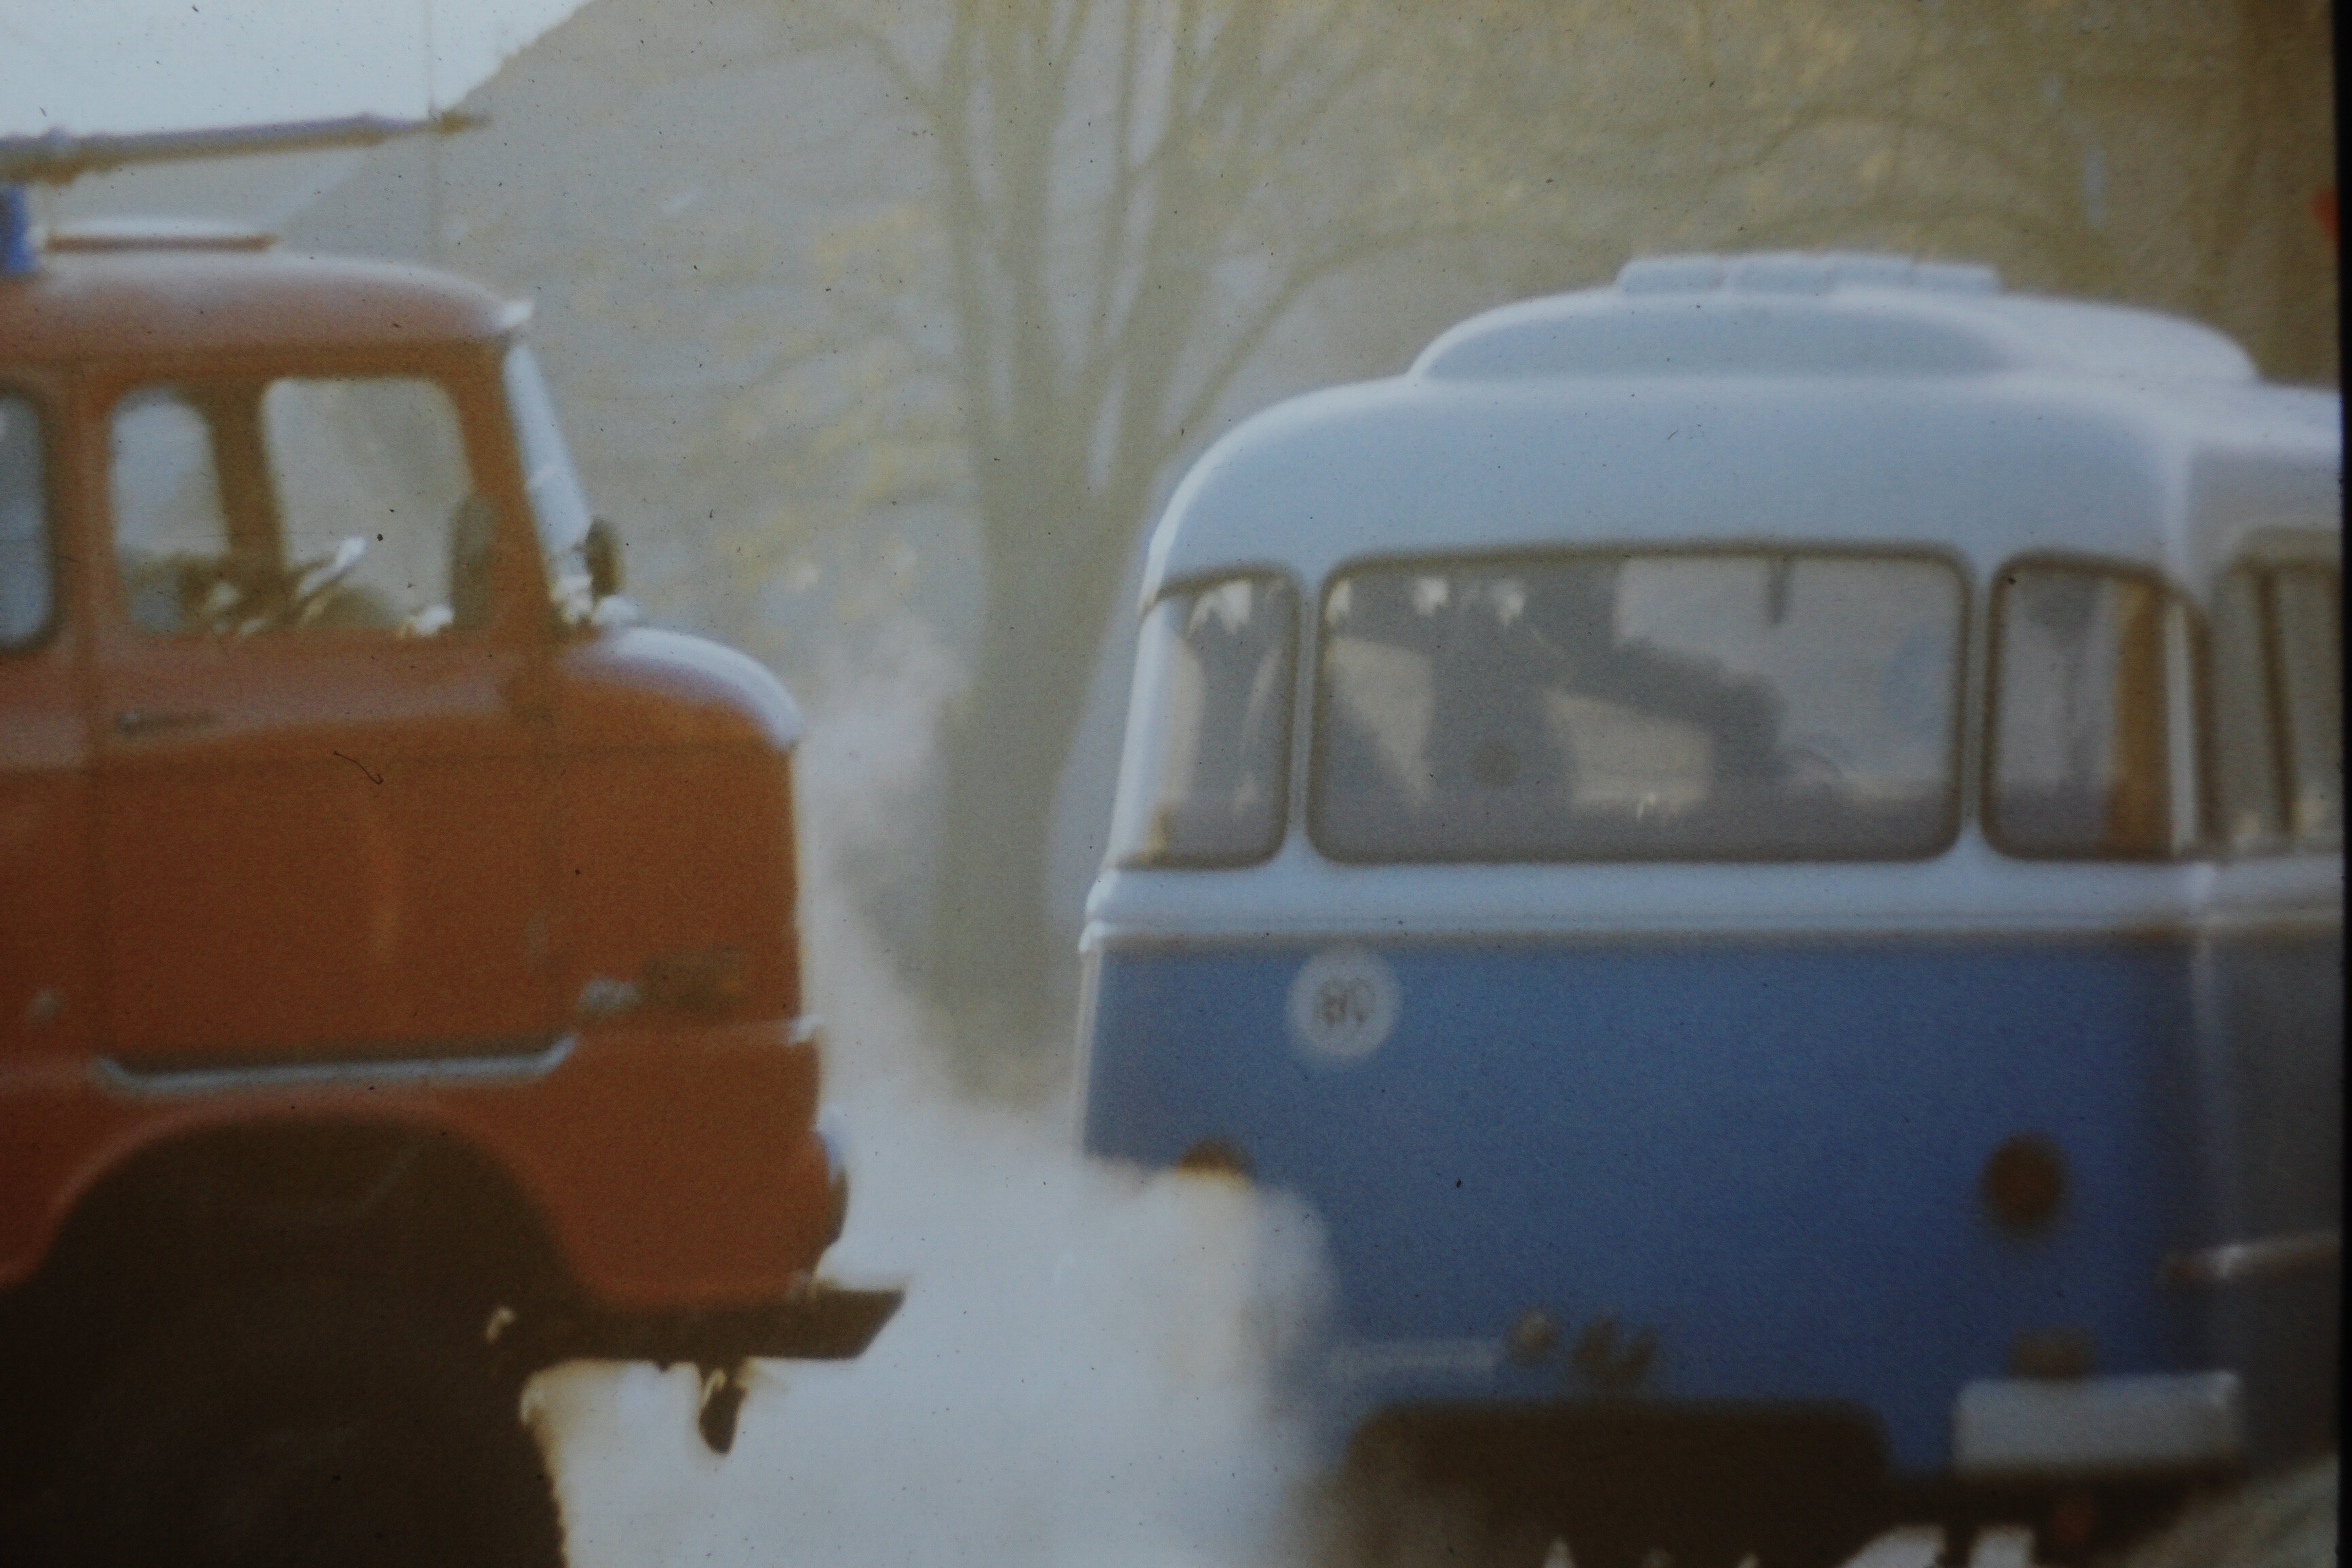 Atomschlagübung "Dosse 83": Straßenblockade mit Feuerwehrfahrzeug und Bus am Haus der Freimarks (DDR Geschichtsmuseum im Dokumentationszentrum Perleberg CC BY-SA)